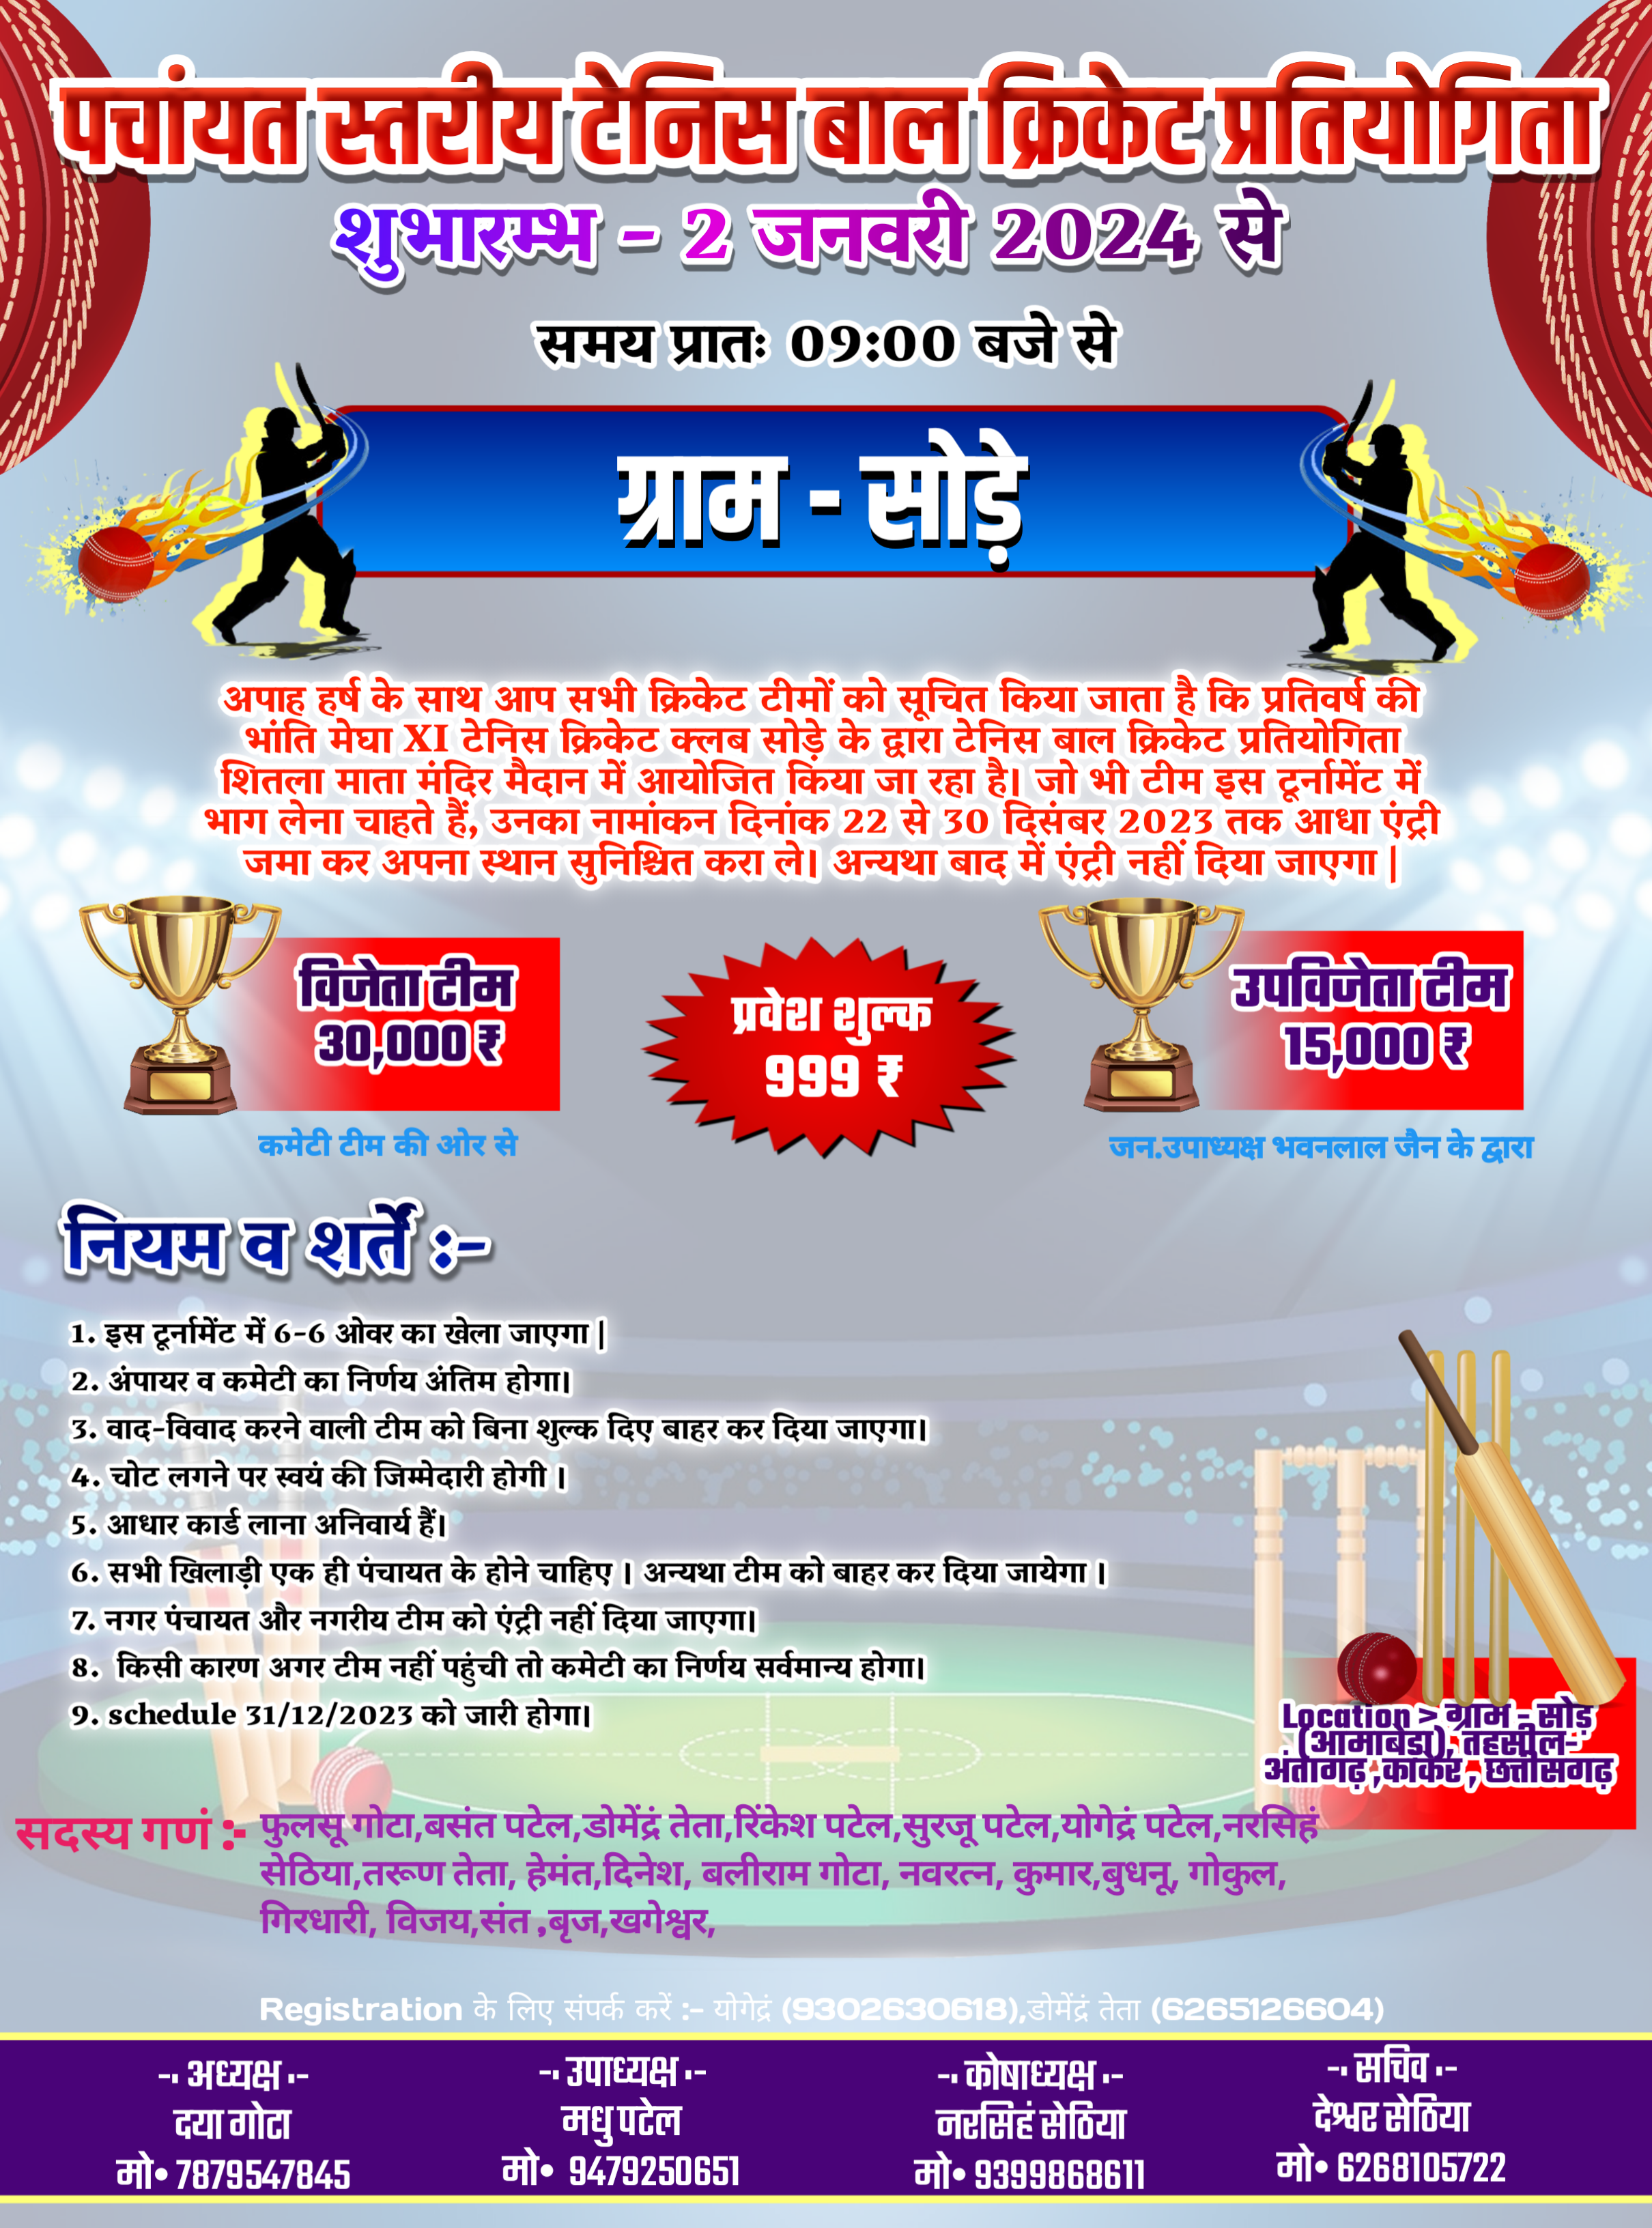 SPL 20 (Panchayat Level Tennis Ball Cricket Tournament) 2024 SODE